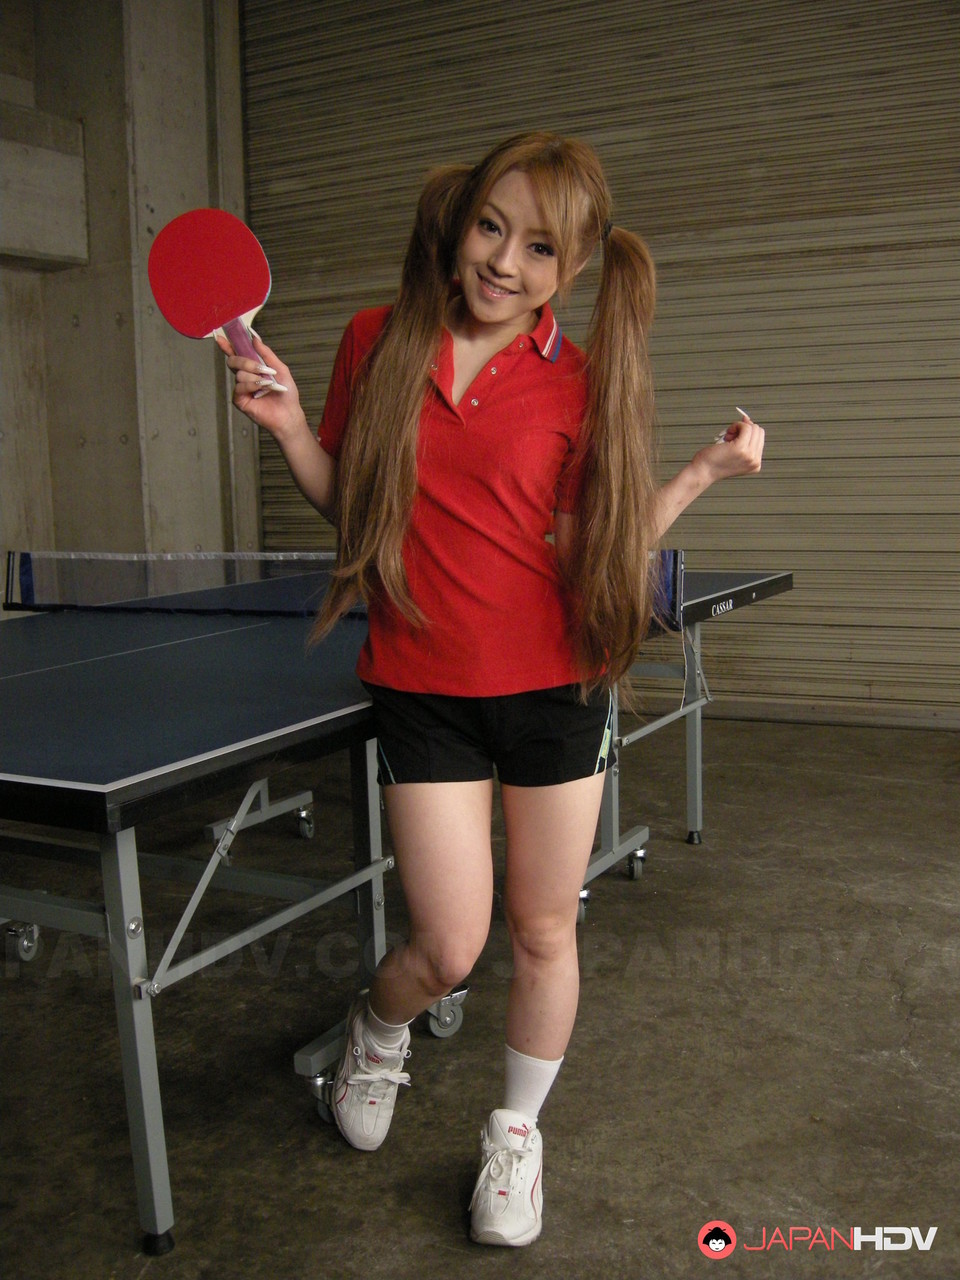 Japanese table tennis player Ria Sakurai gets face fucked by her coach porno fotoğrafı #426550941 | Japan HDV Pics, Ria Sakurai, Japanese, mobil porno